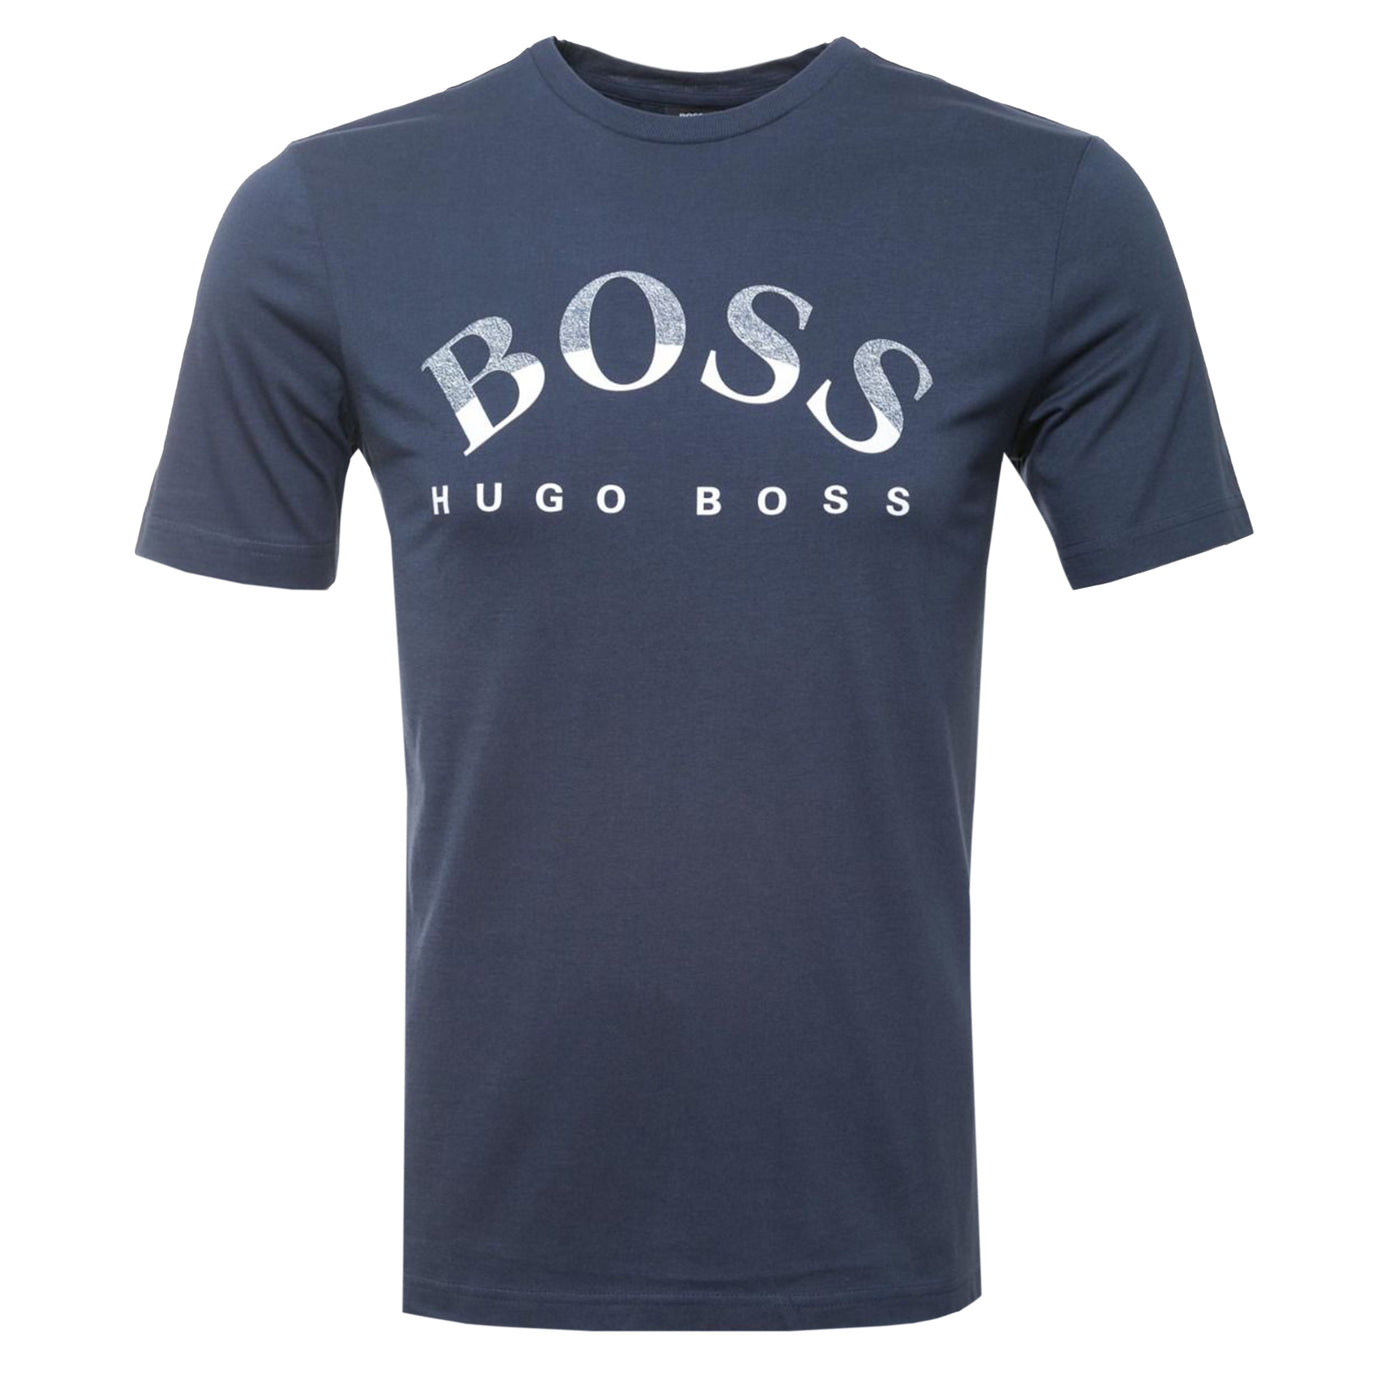 BOSS Tee 1 T-Shirt in Navy